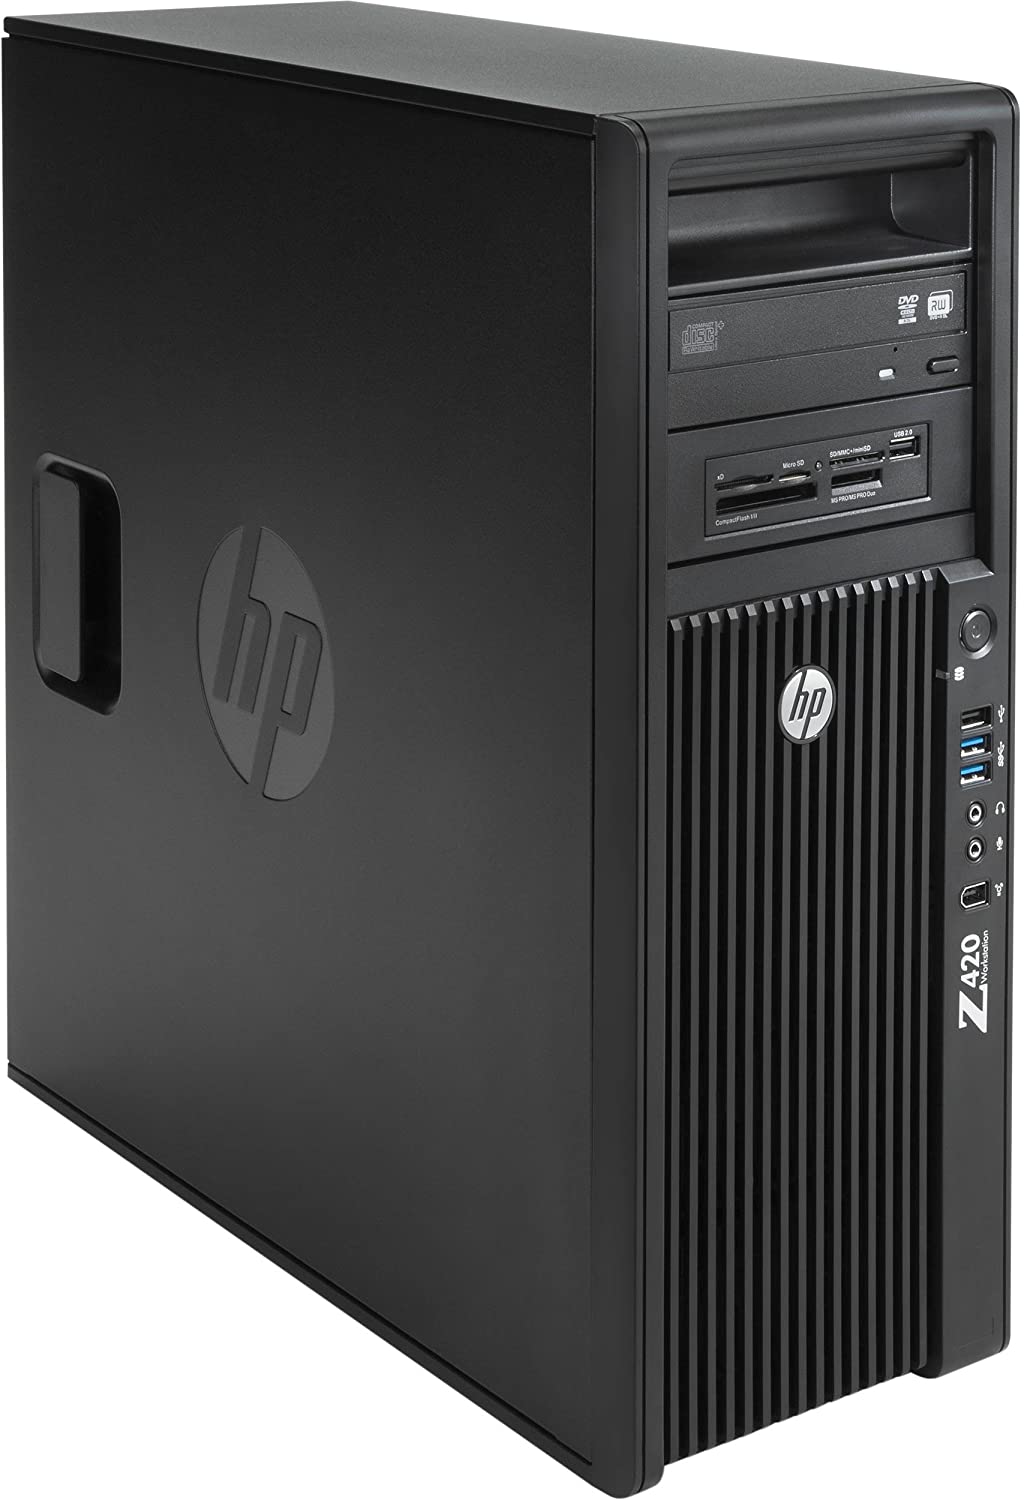 Wie neu: HP Z420 Workstation